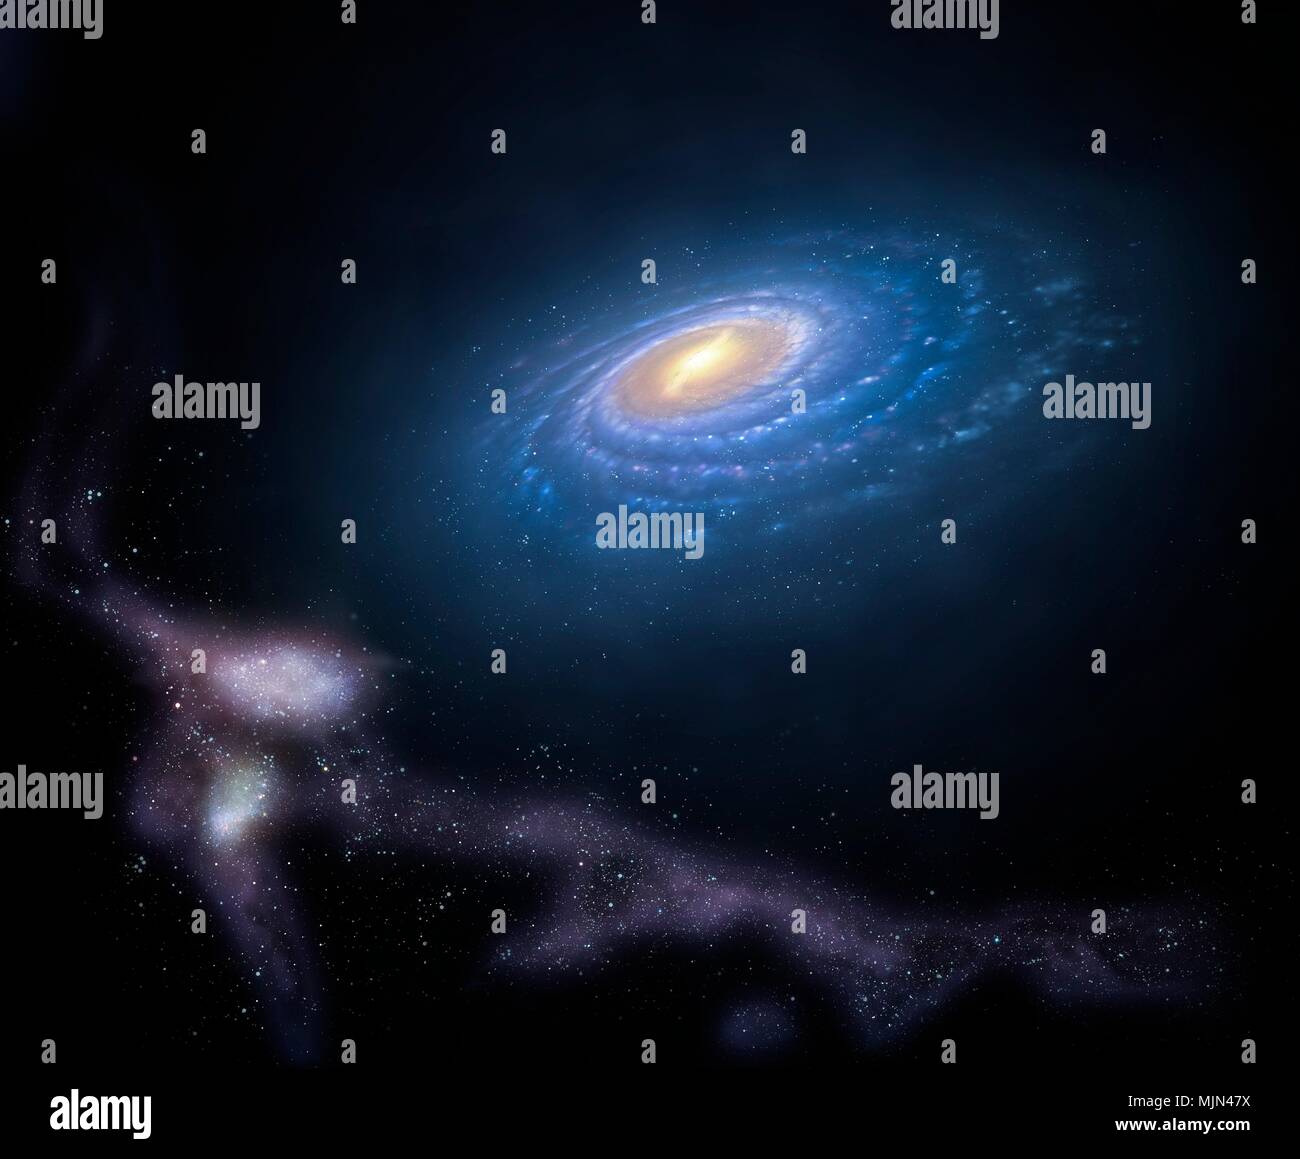 Illustrazione della Via Lattea il cosiddetto Magellanic Stream. Questo è un flusso di rapido movimento nubi di gas in orbita attorno la nostra galassia, associati con le due piccole galassie chiamato Magellanic nuvole. Come tali galassie in orbita attorno alla Via Lattea, forze di marea tirare le stelle e gas da loro, costituenti il nastro corrente sagomato. Il flusso si estende su 180 gradi di cielo, corrispondente ad una lunghezza di circa 180.000 anni-luce. Foto Stock